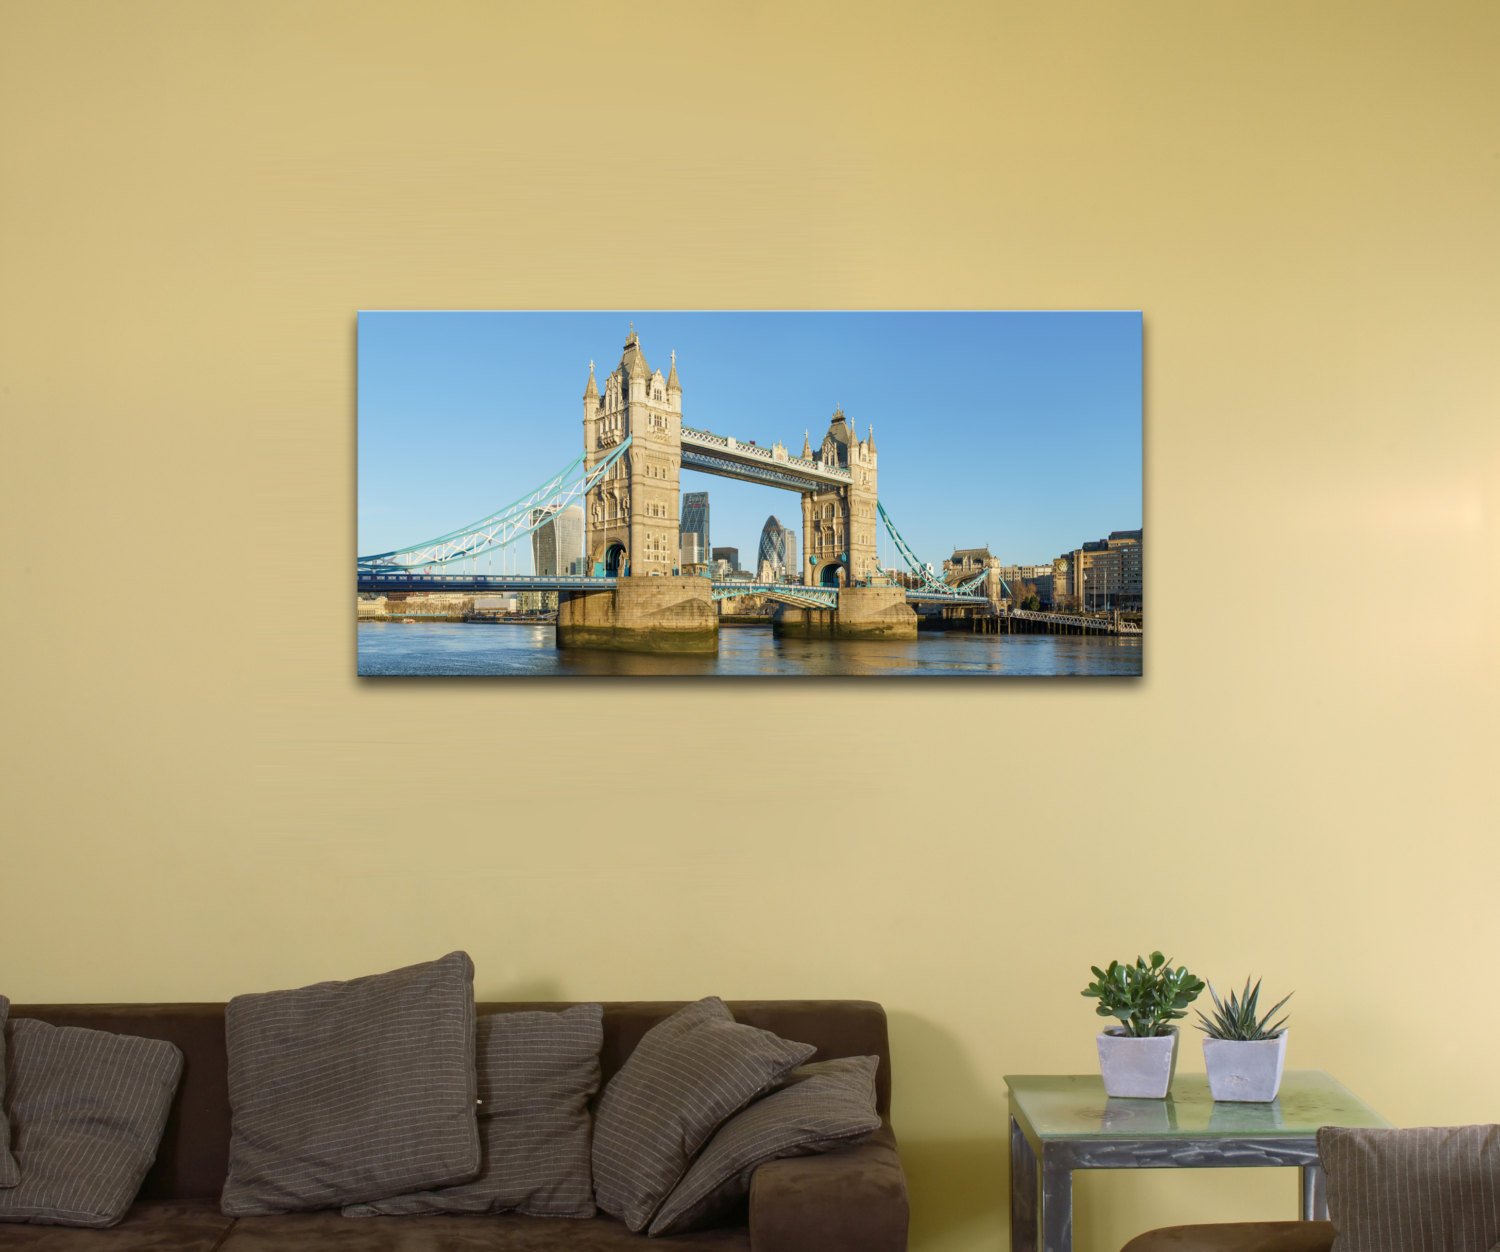 Tower Bridge, United Kingdom (10